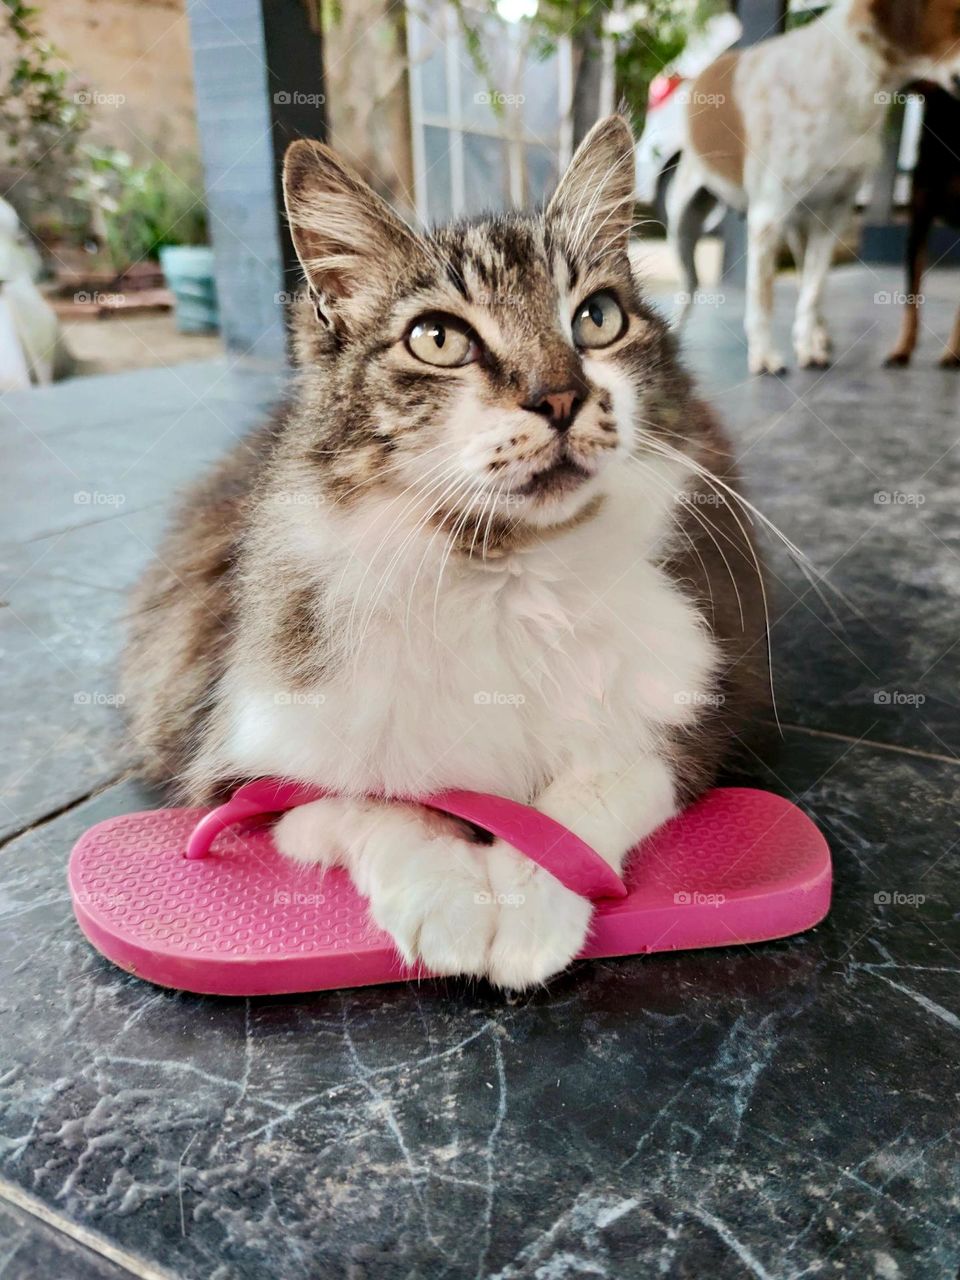 mom's slipper